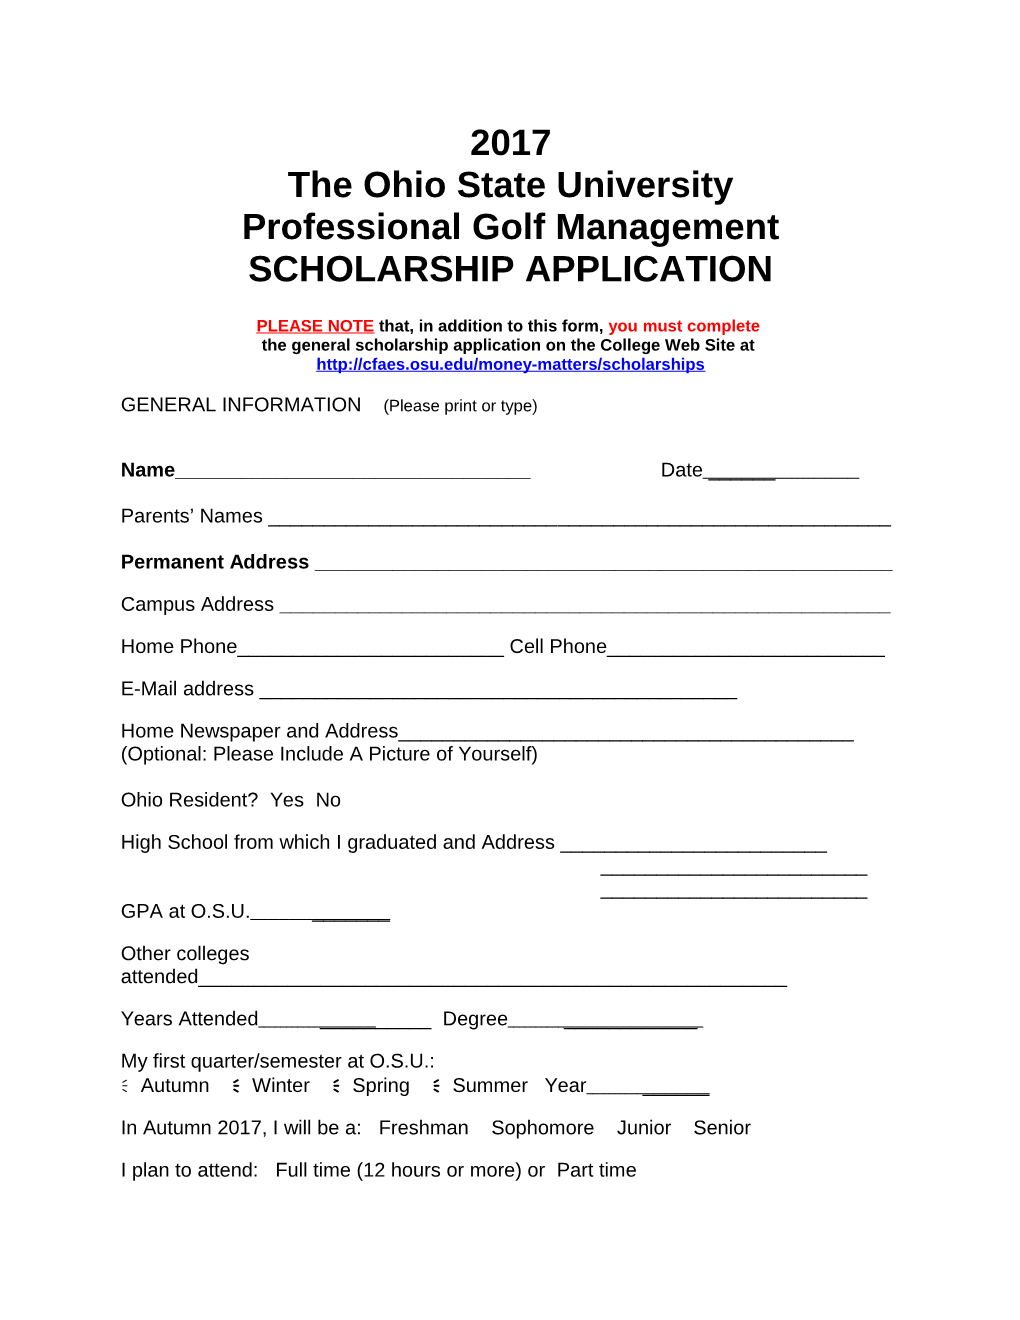 The Ohio State University s14